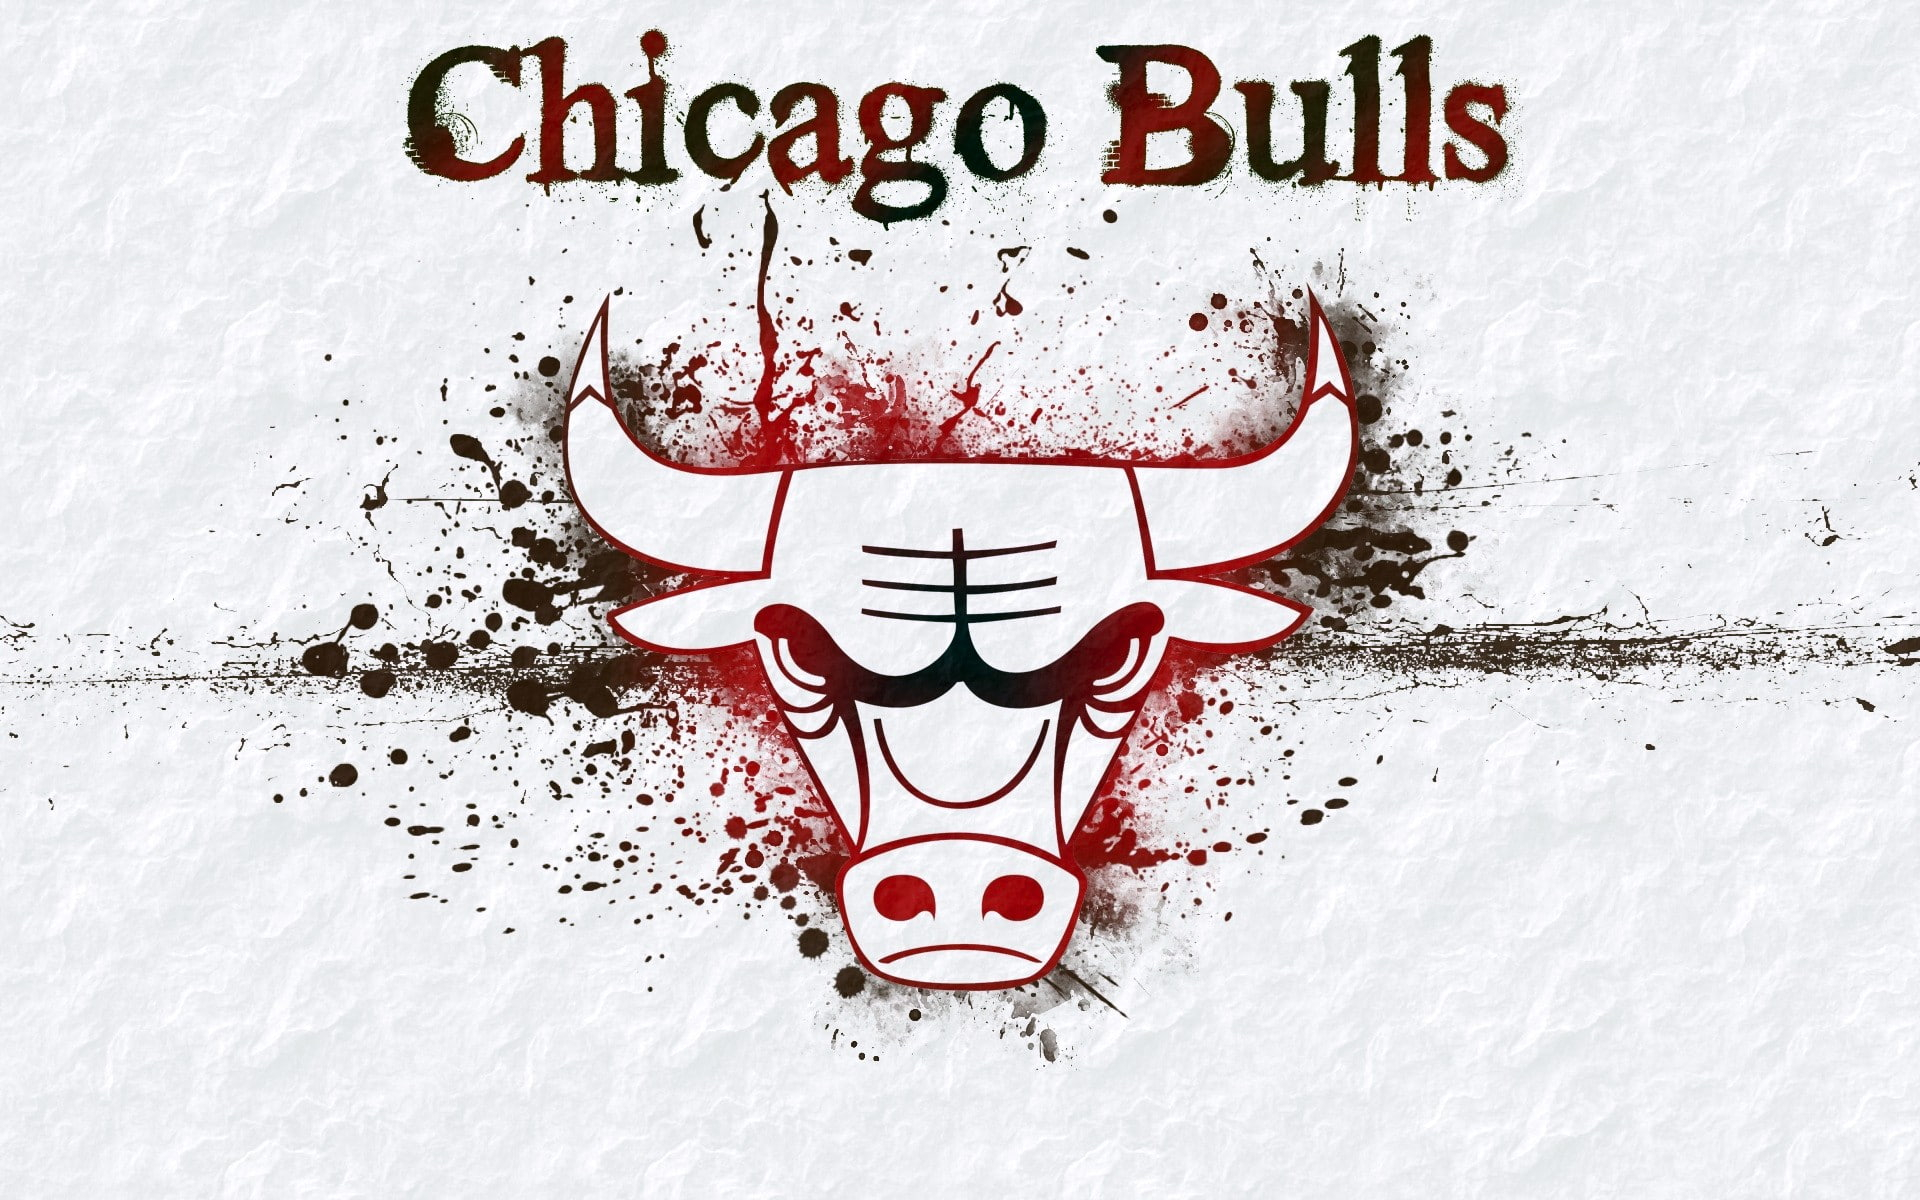 Chicago Bulls wallpaper, logo, grass, nba, basketball